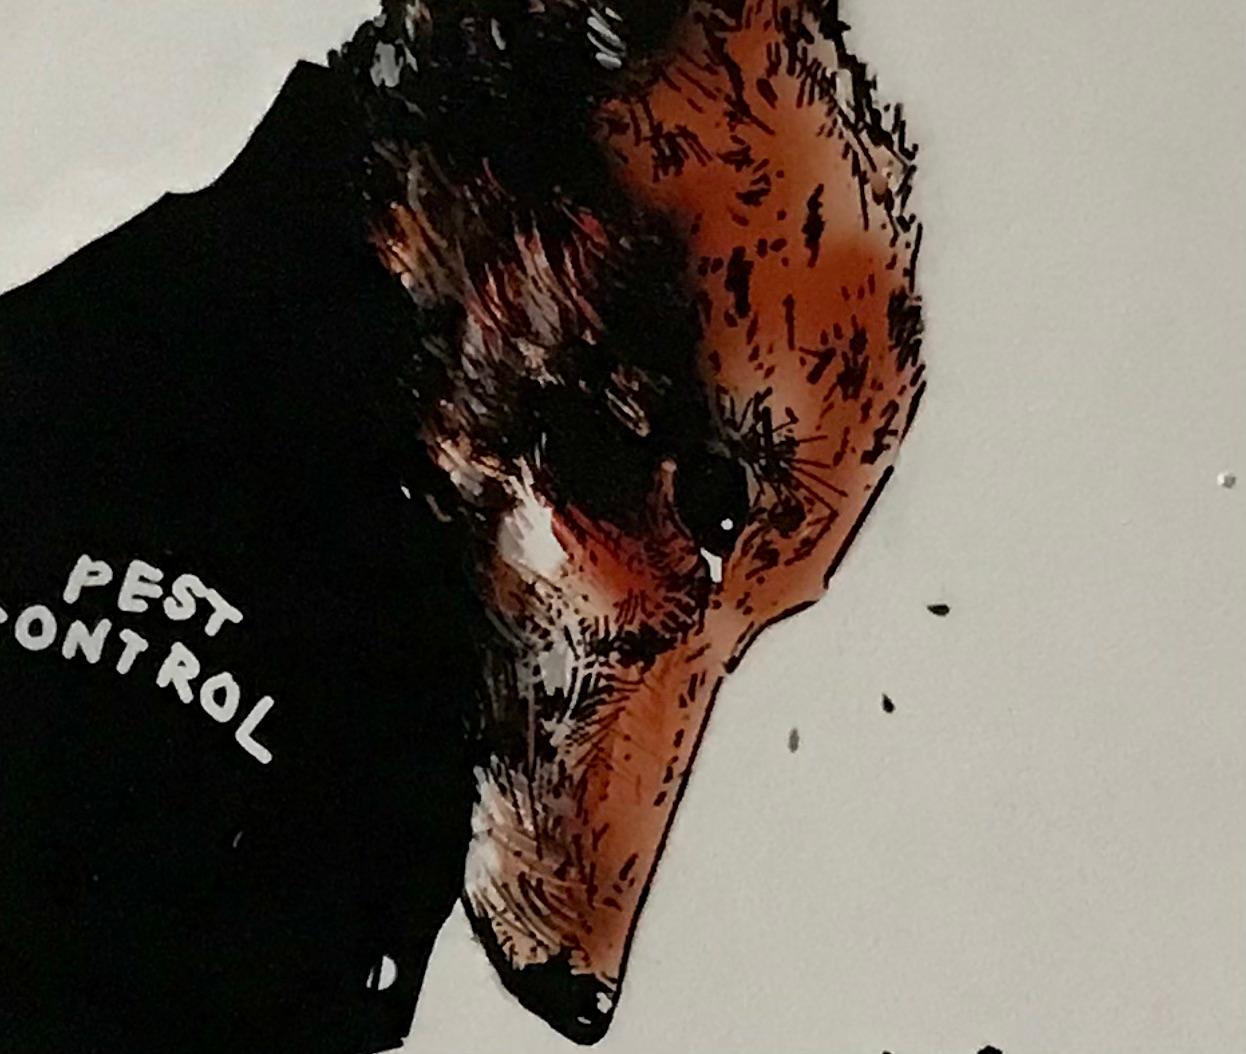 Pest control de Harry Bunce, se compose de tons noirs et bruns qui montrent un renard tenant un fusil sur un rat avec des coups de feu sur la feuille, en arrière-plan.

Informations complémentaires :

Taille de l'image : 
Hauteur : 39,5 cm (15,55